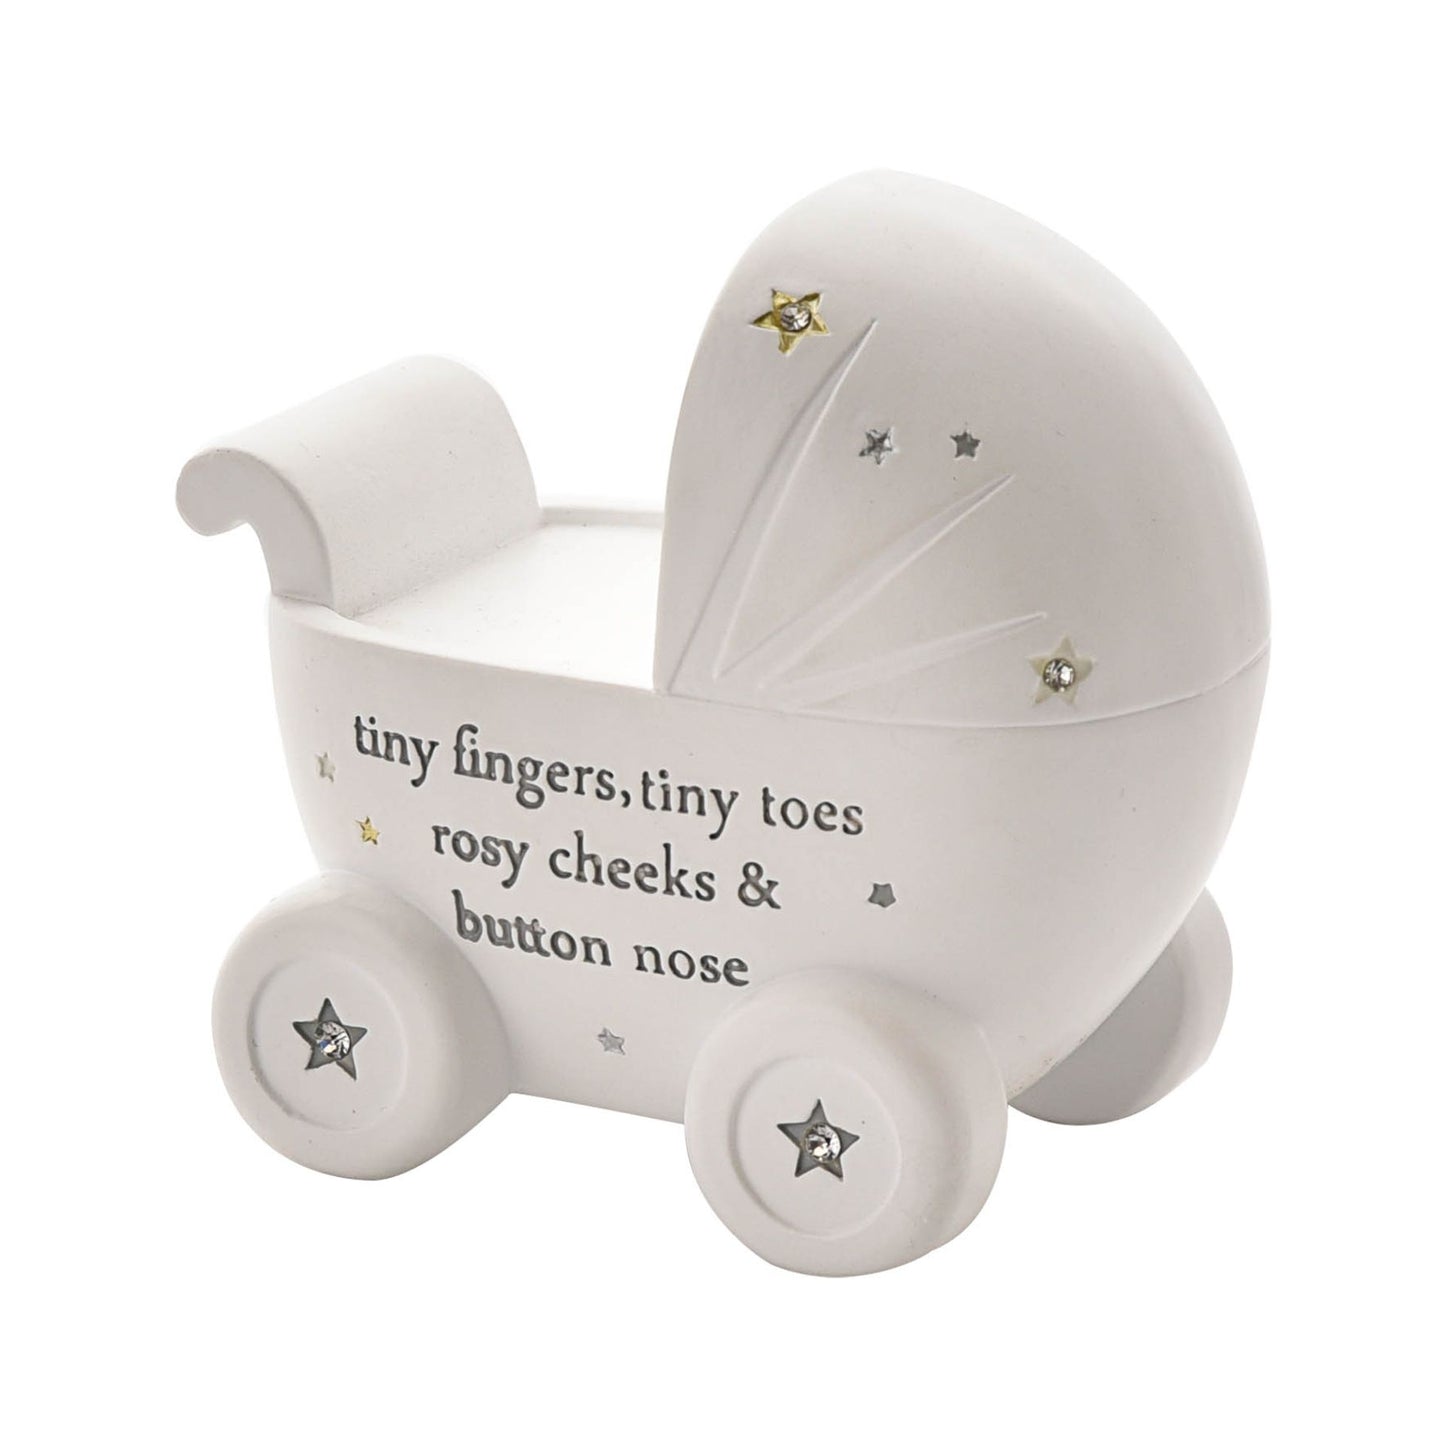 Tiny Fingers & Tiny Toes Pram Money Box | New Baby Gift